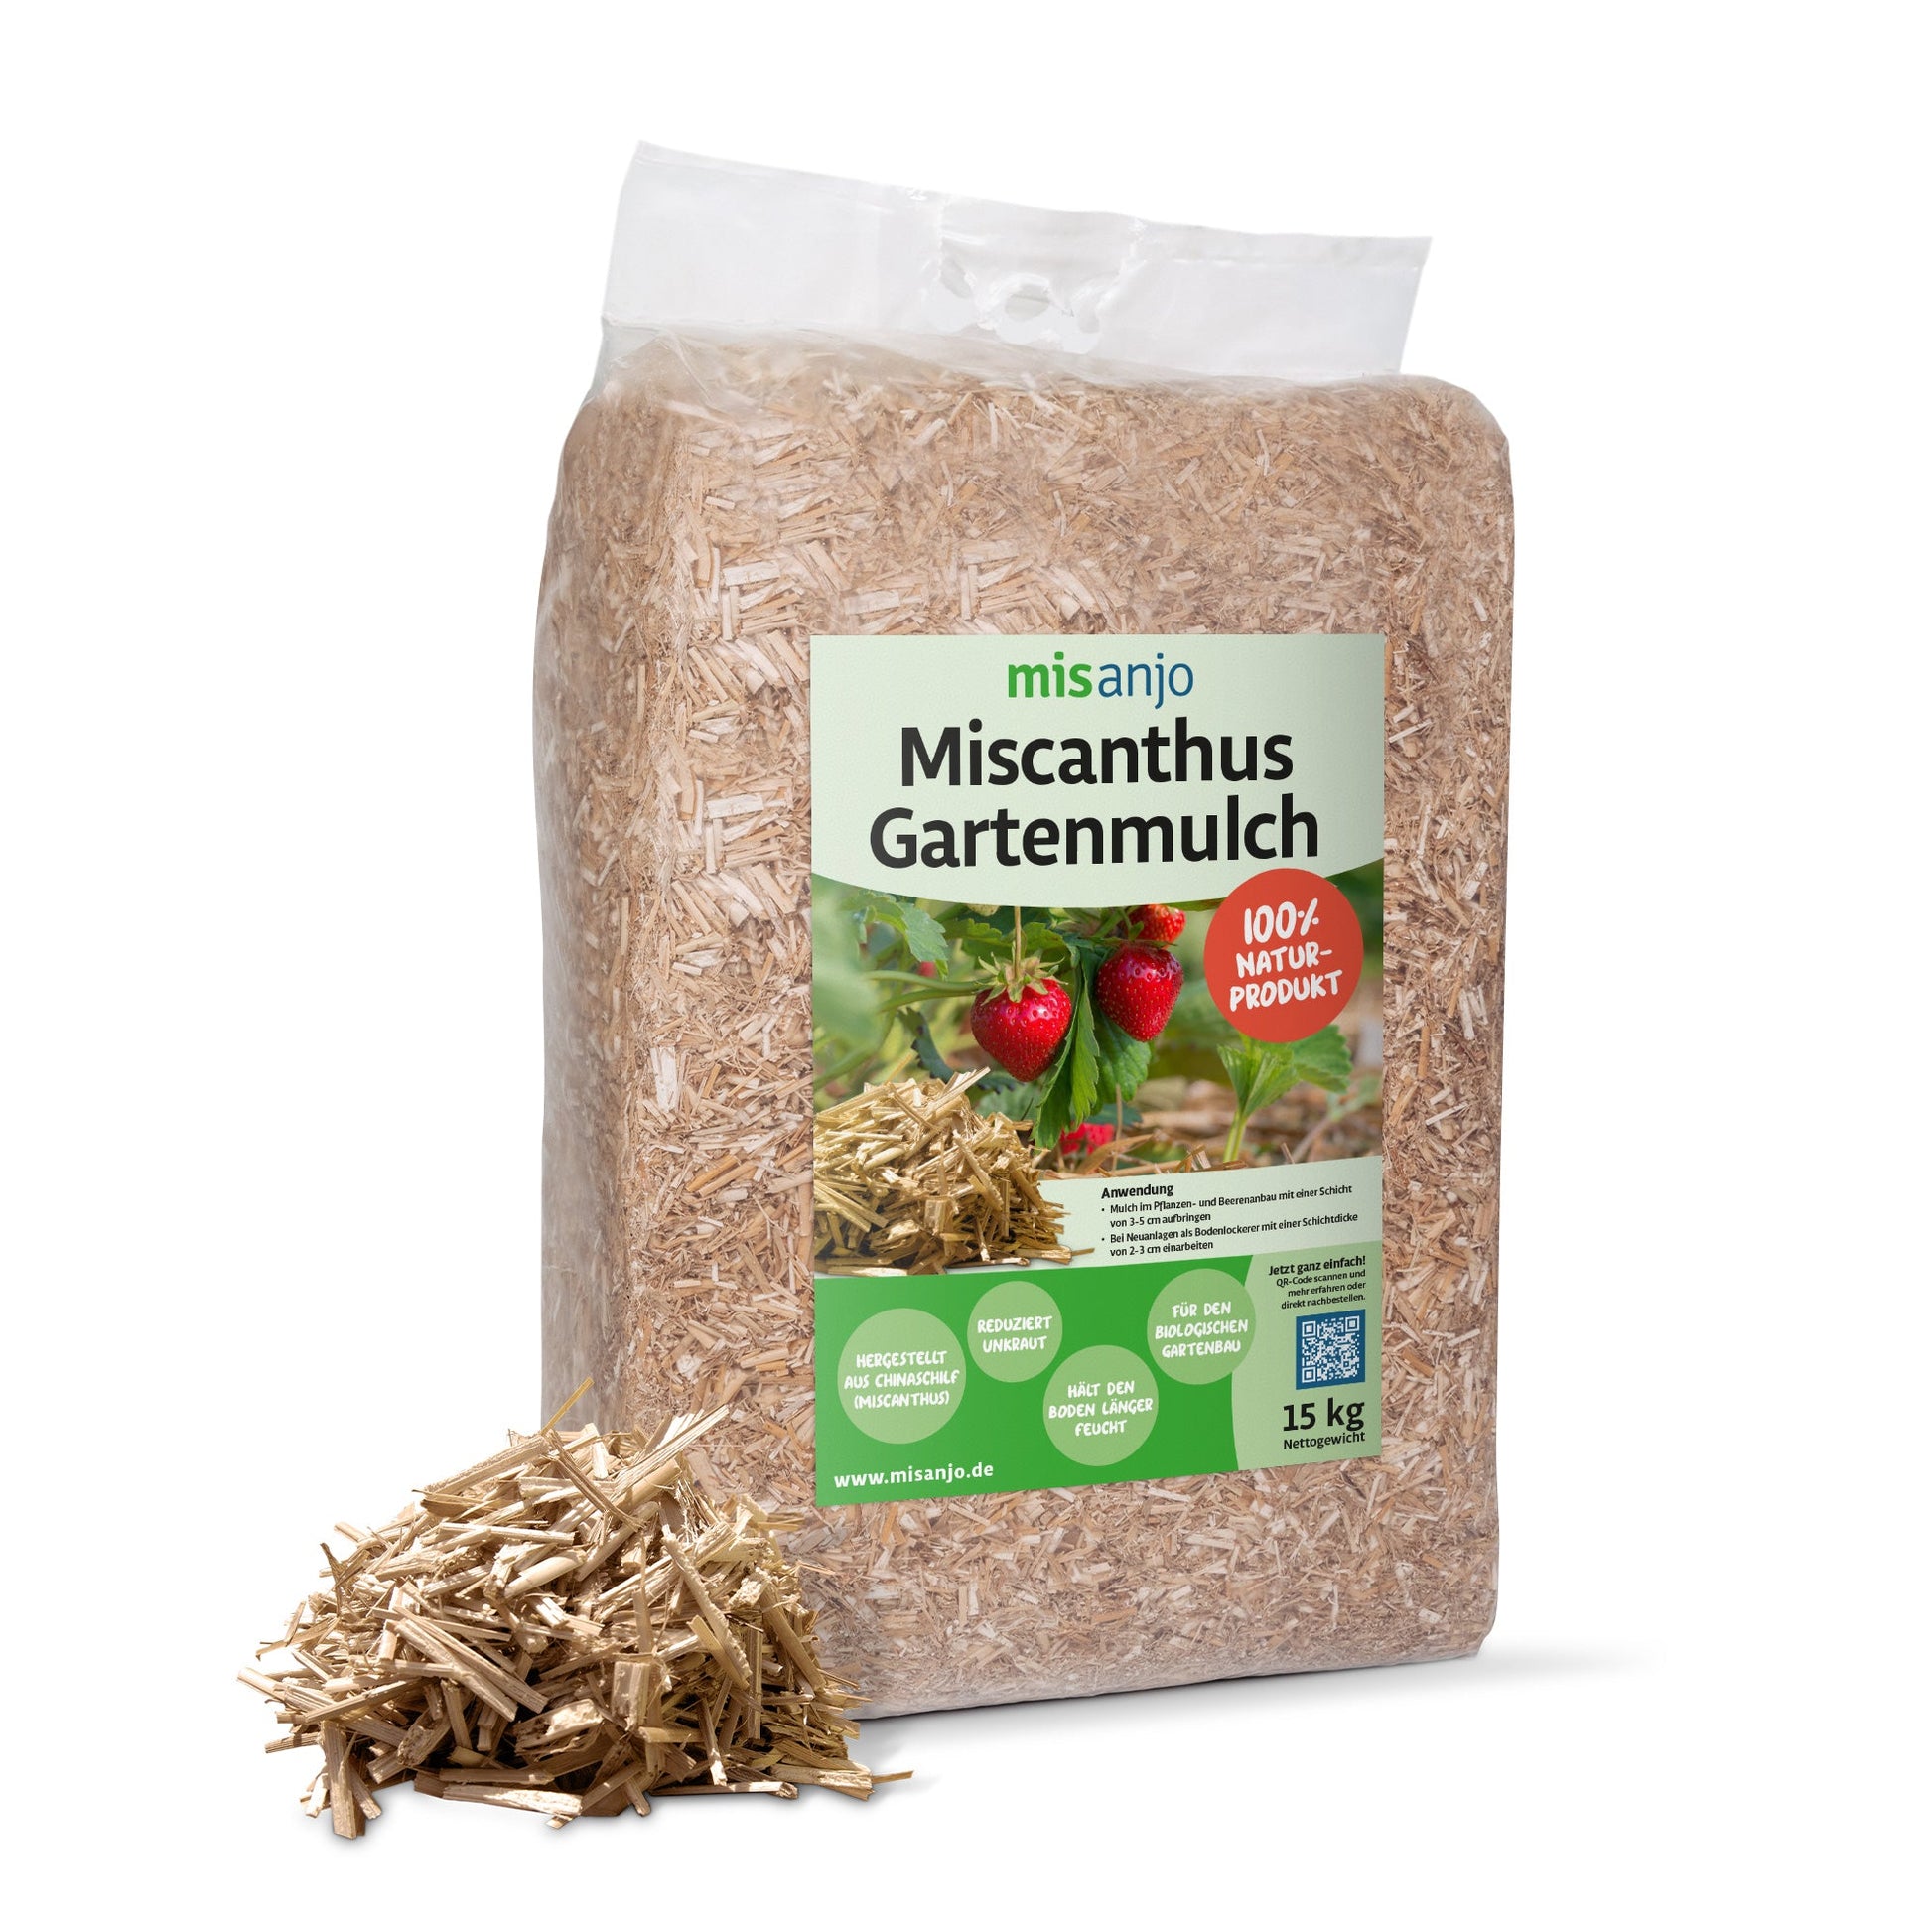 Miscanthus Gartenmulch 15 kg Naturprodukt von misanjo